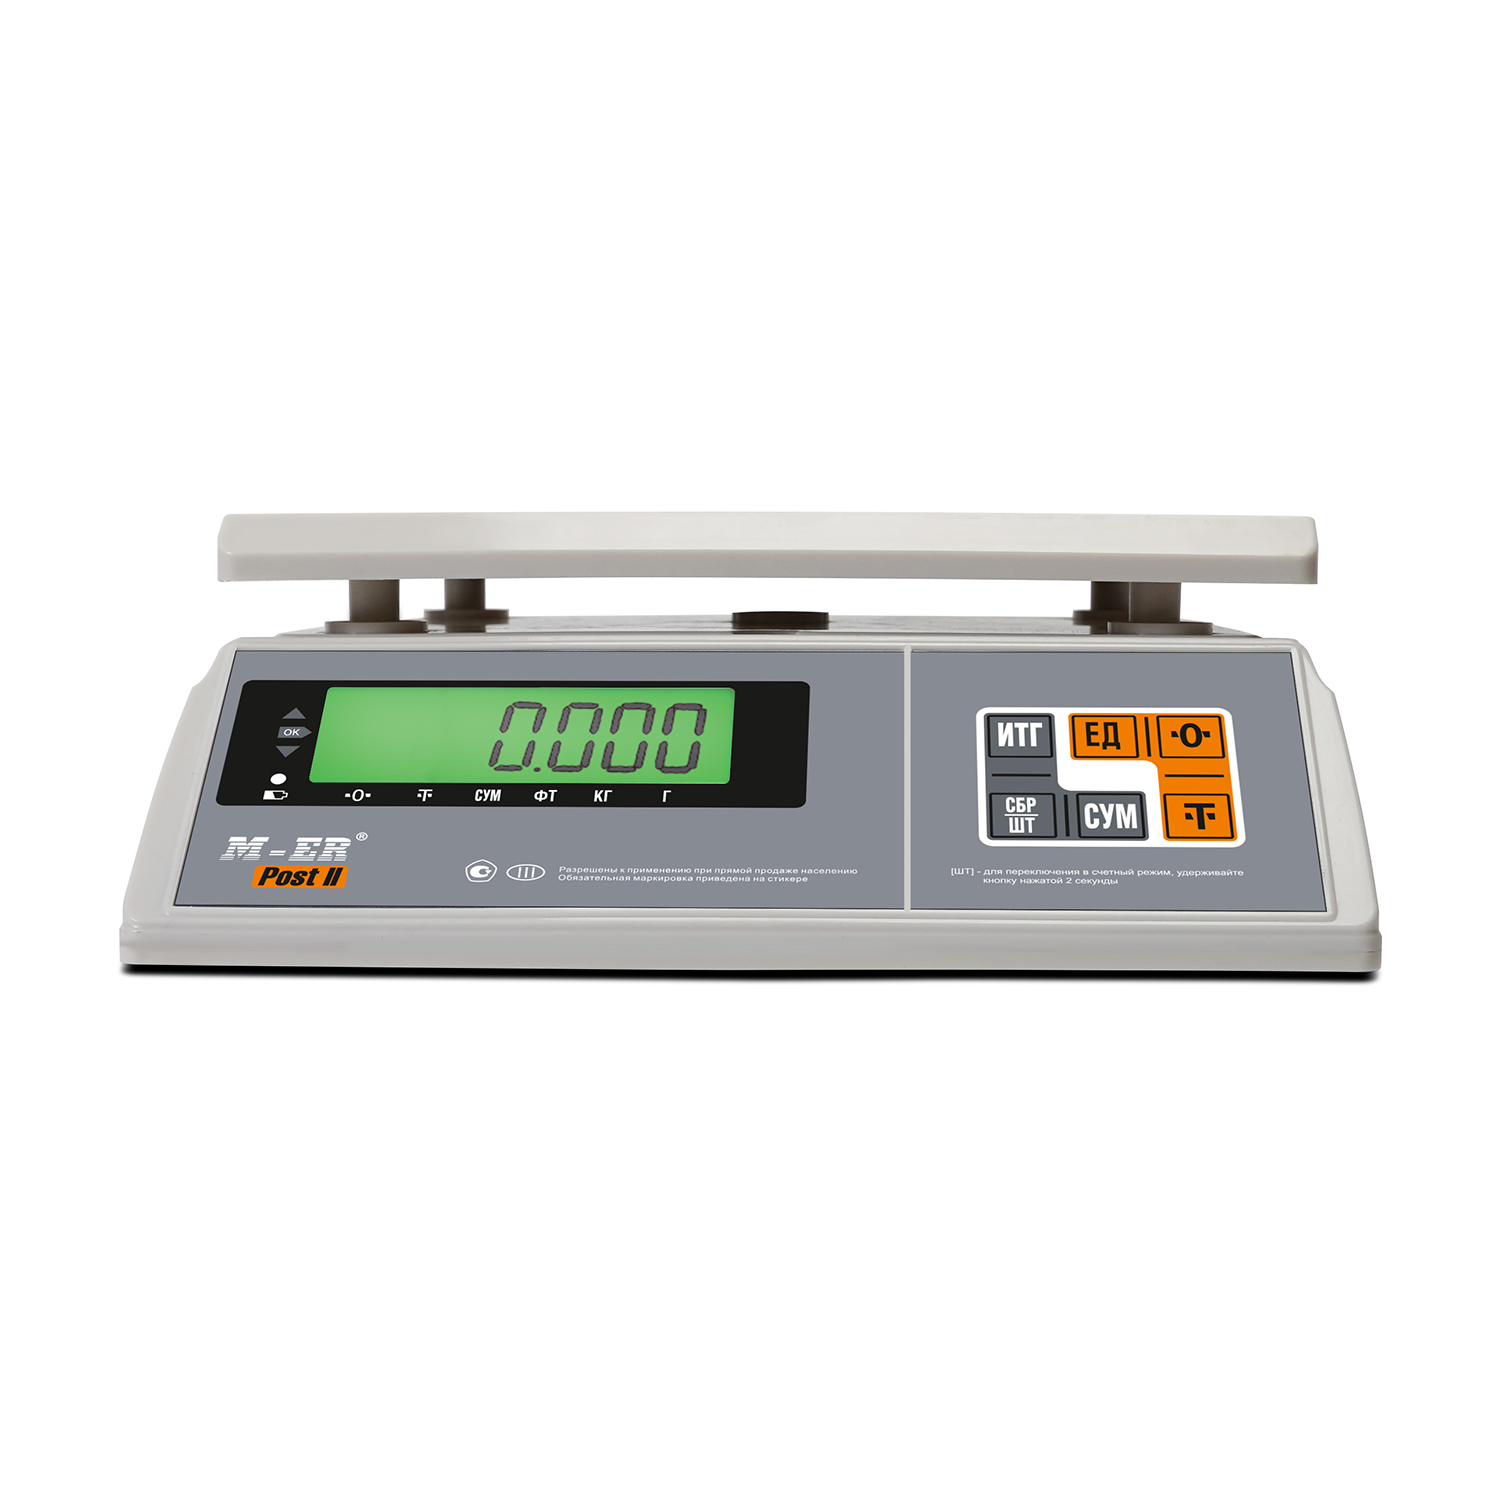 Порционные весы M-ER 326 AFU-15.1 "Post II" LCD (3060)